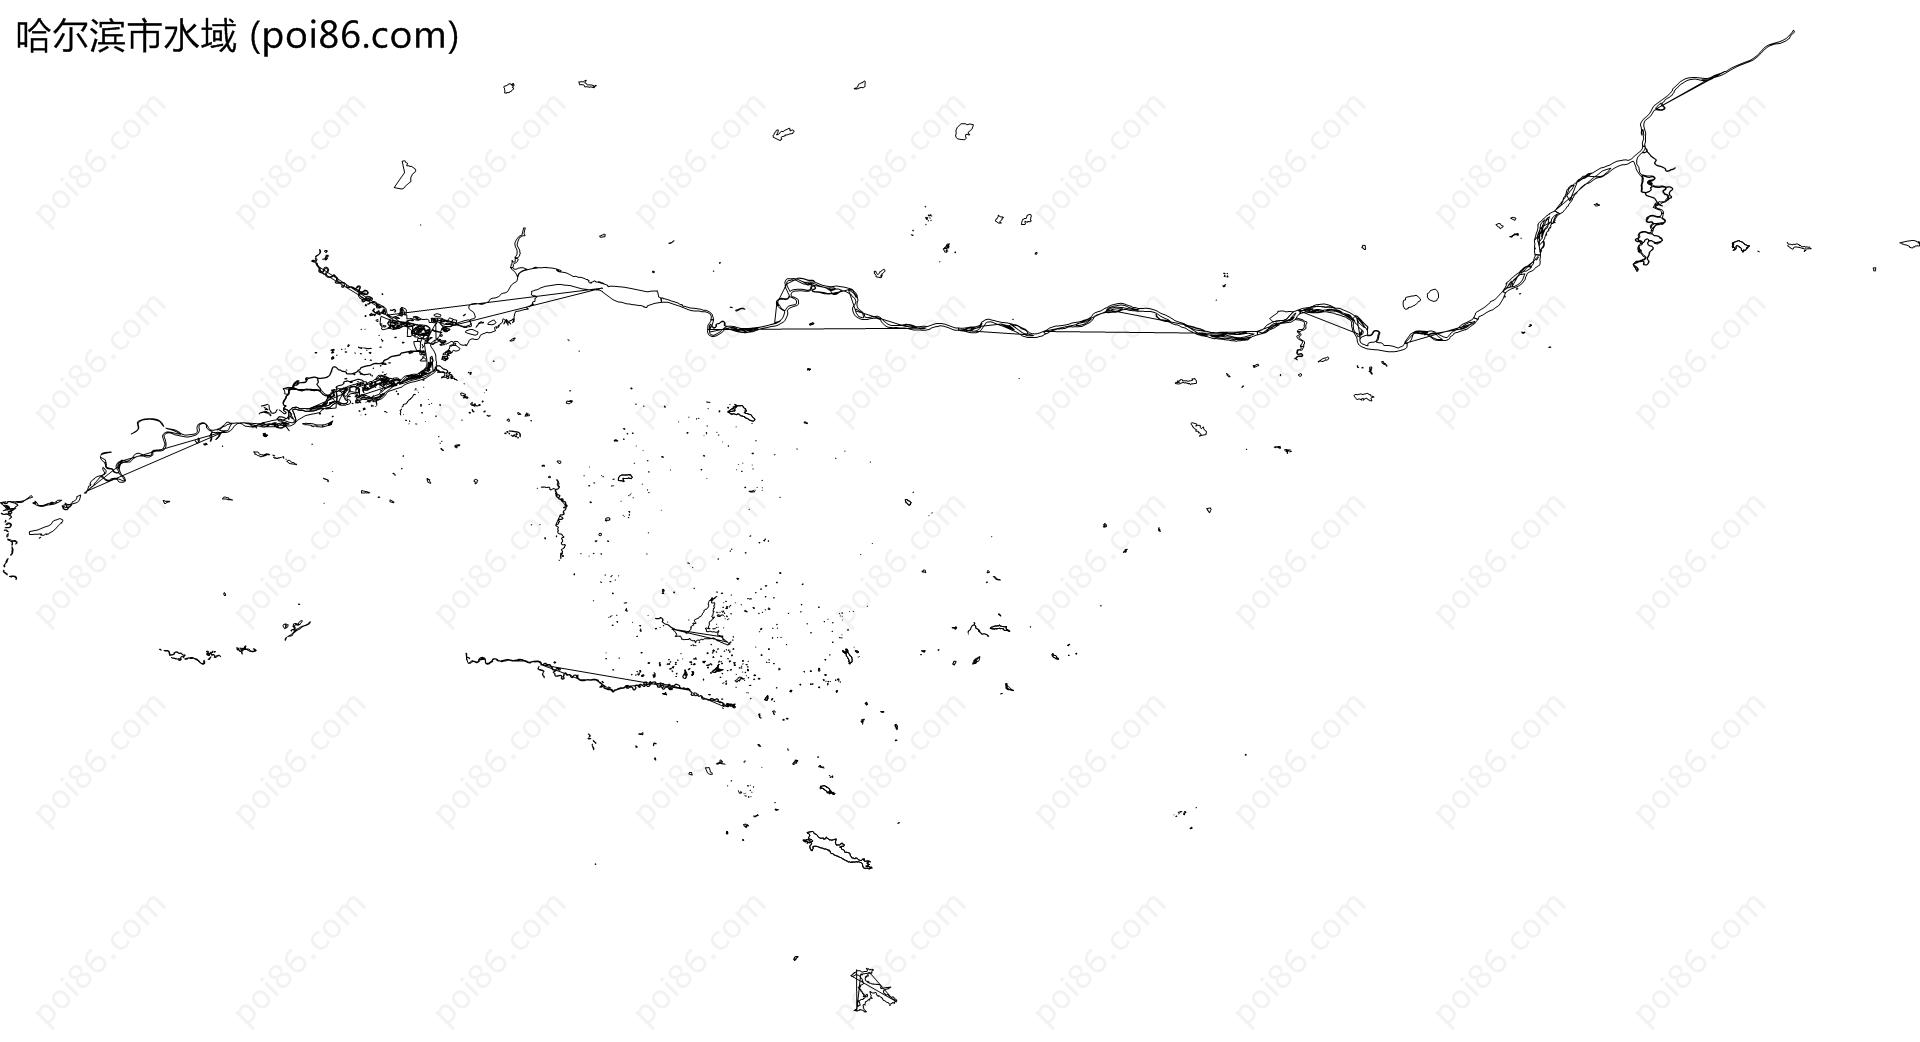 哈尔滨市水域地图